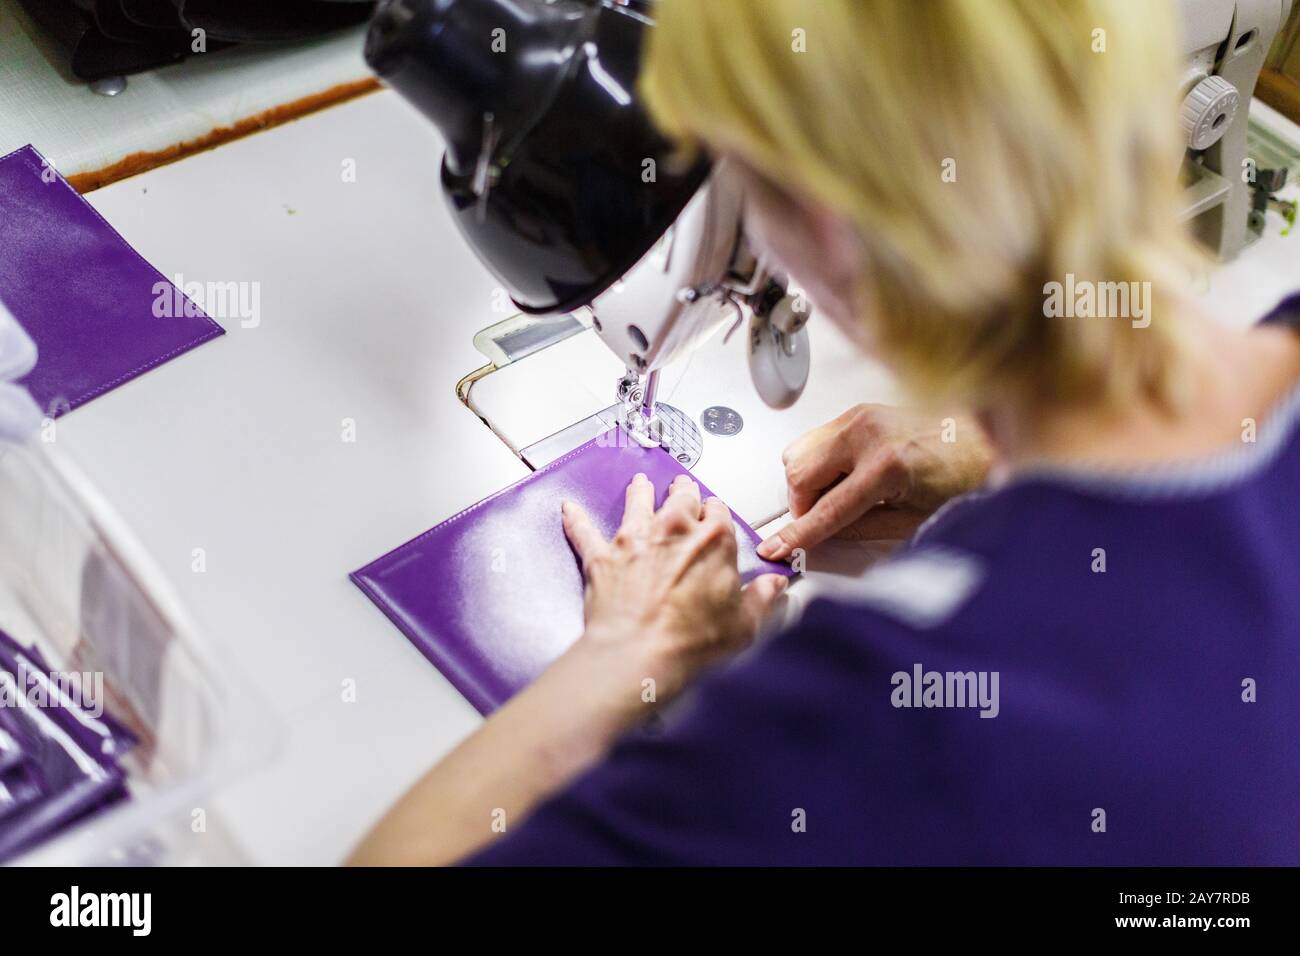 woman stitching a purse Stock Photo